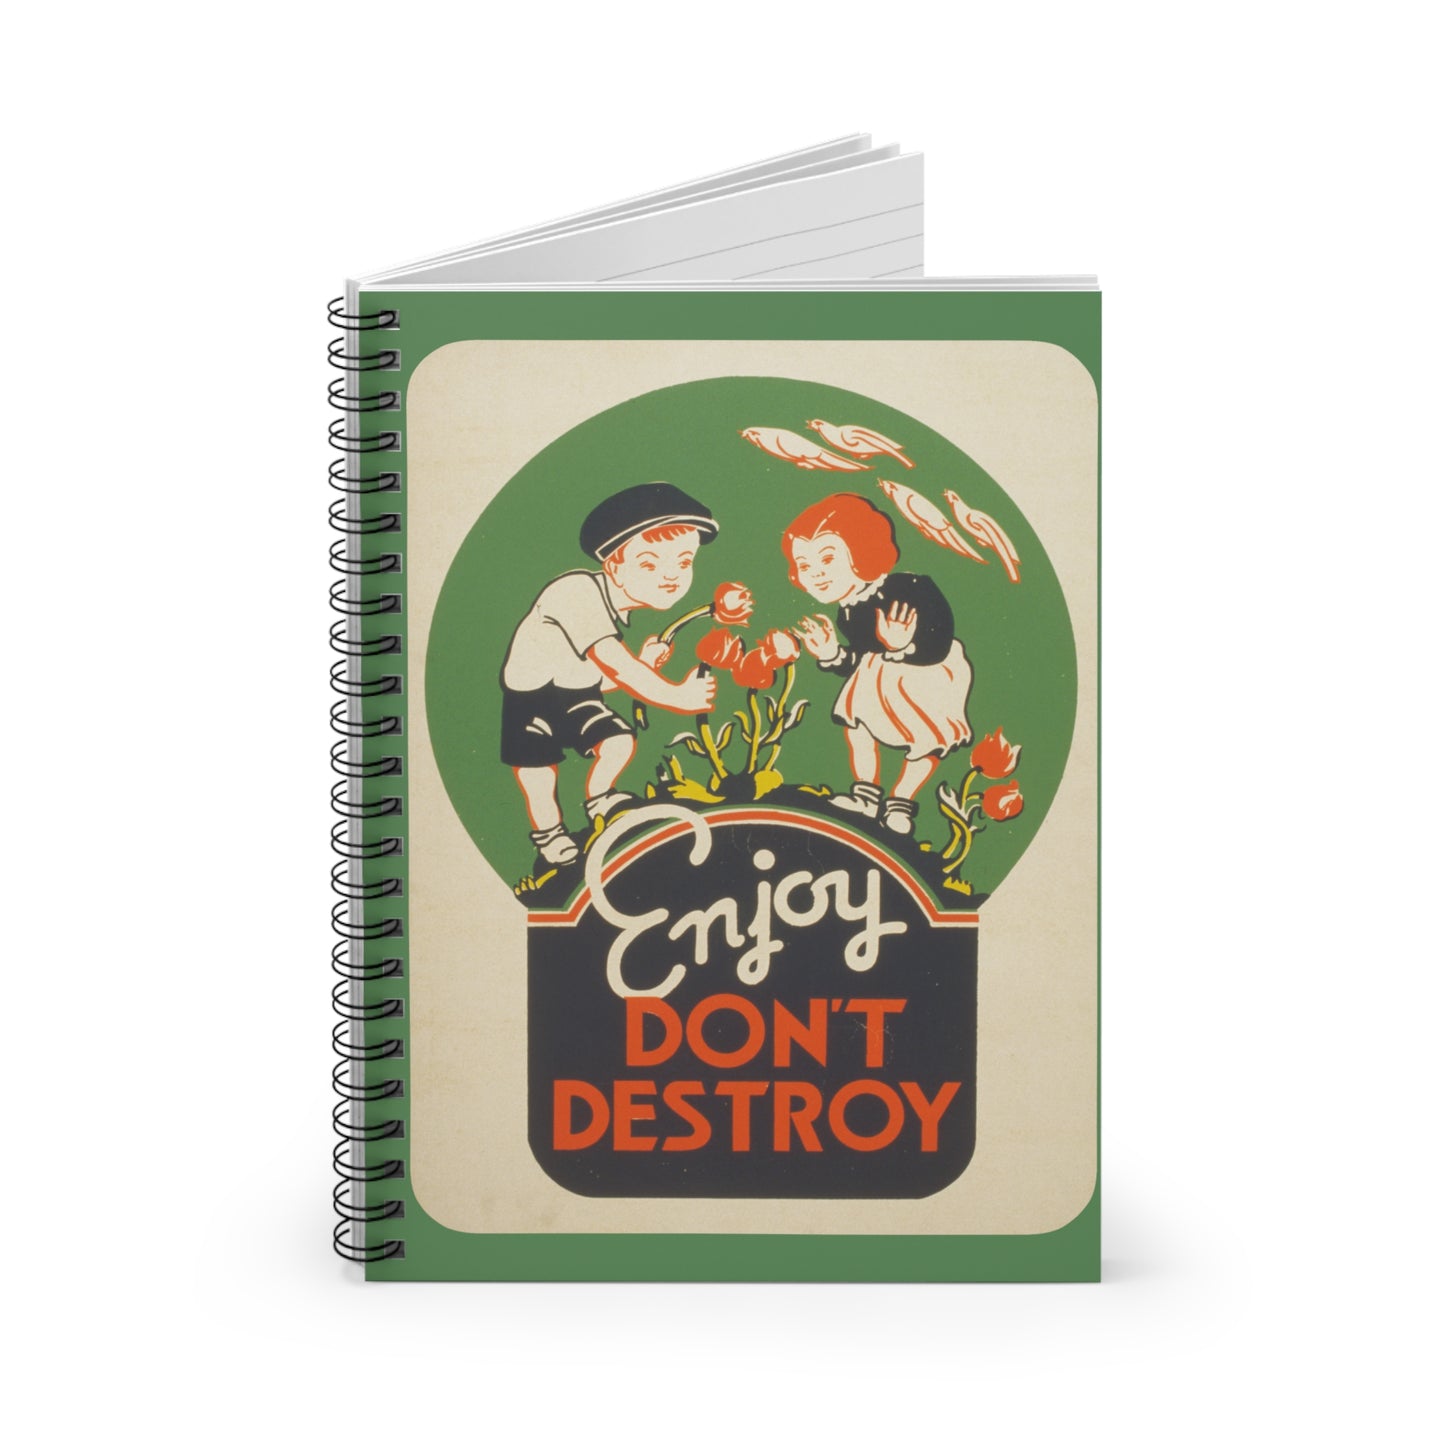 "Enjoy Don't Destroy" Vintage Poster Spiral Notebook - Ruled Line